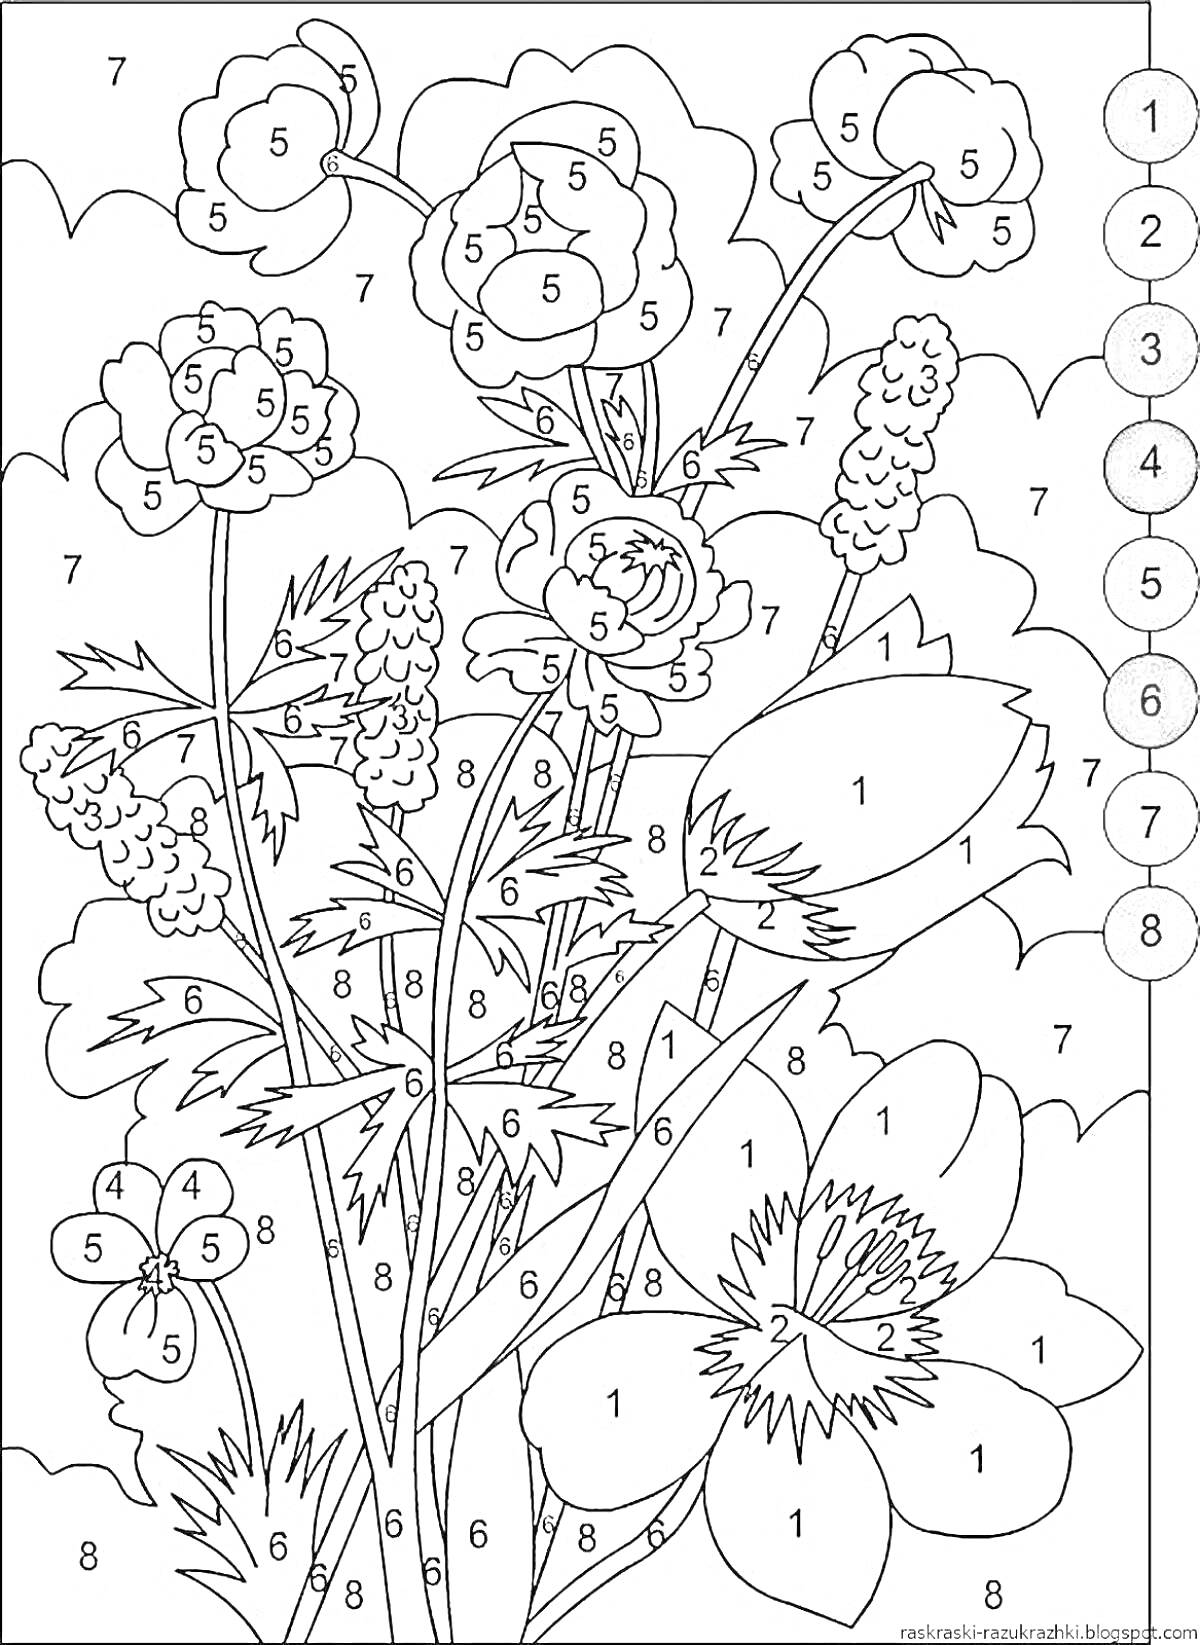 Раскраска Раскраска по номерам с букетом полевых цветов